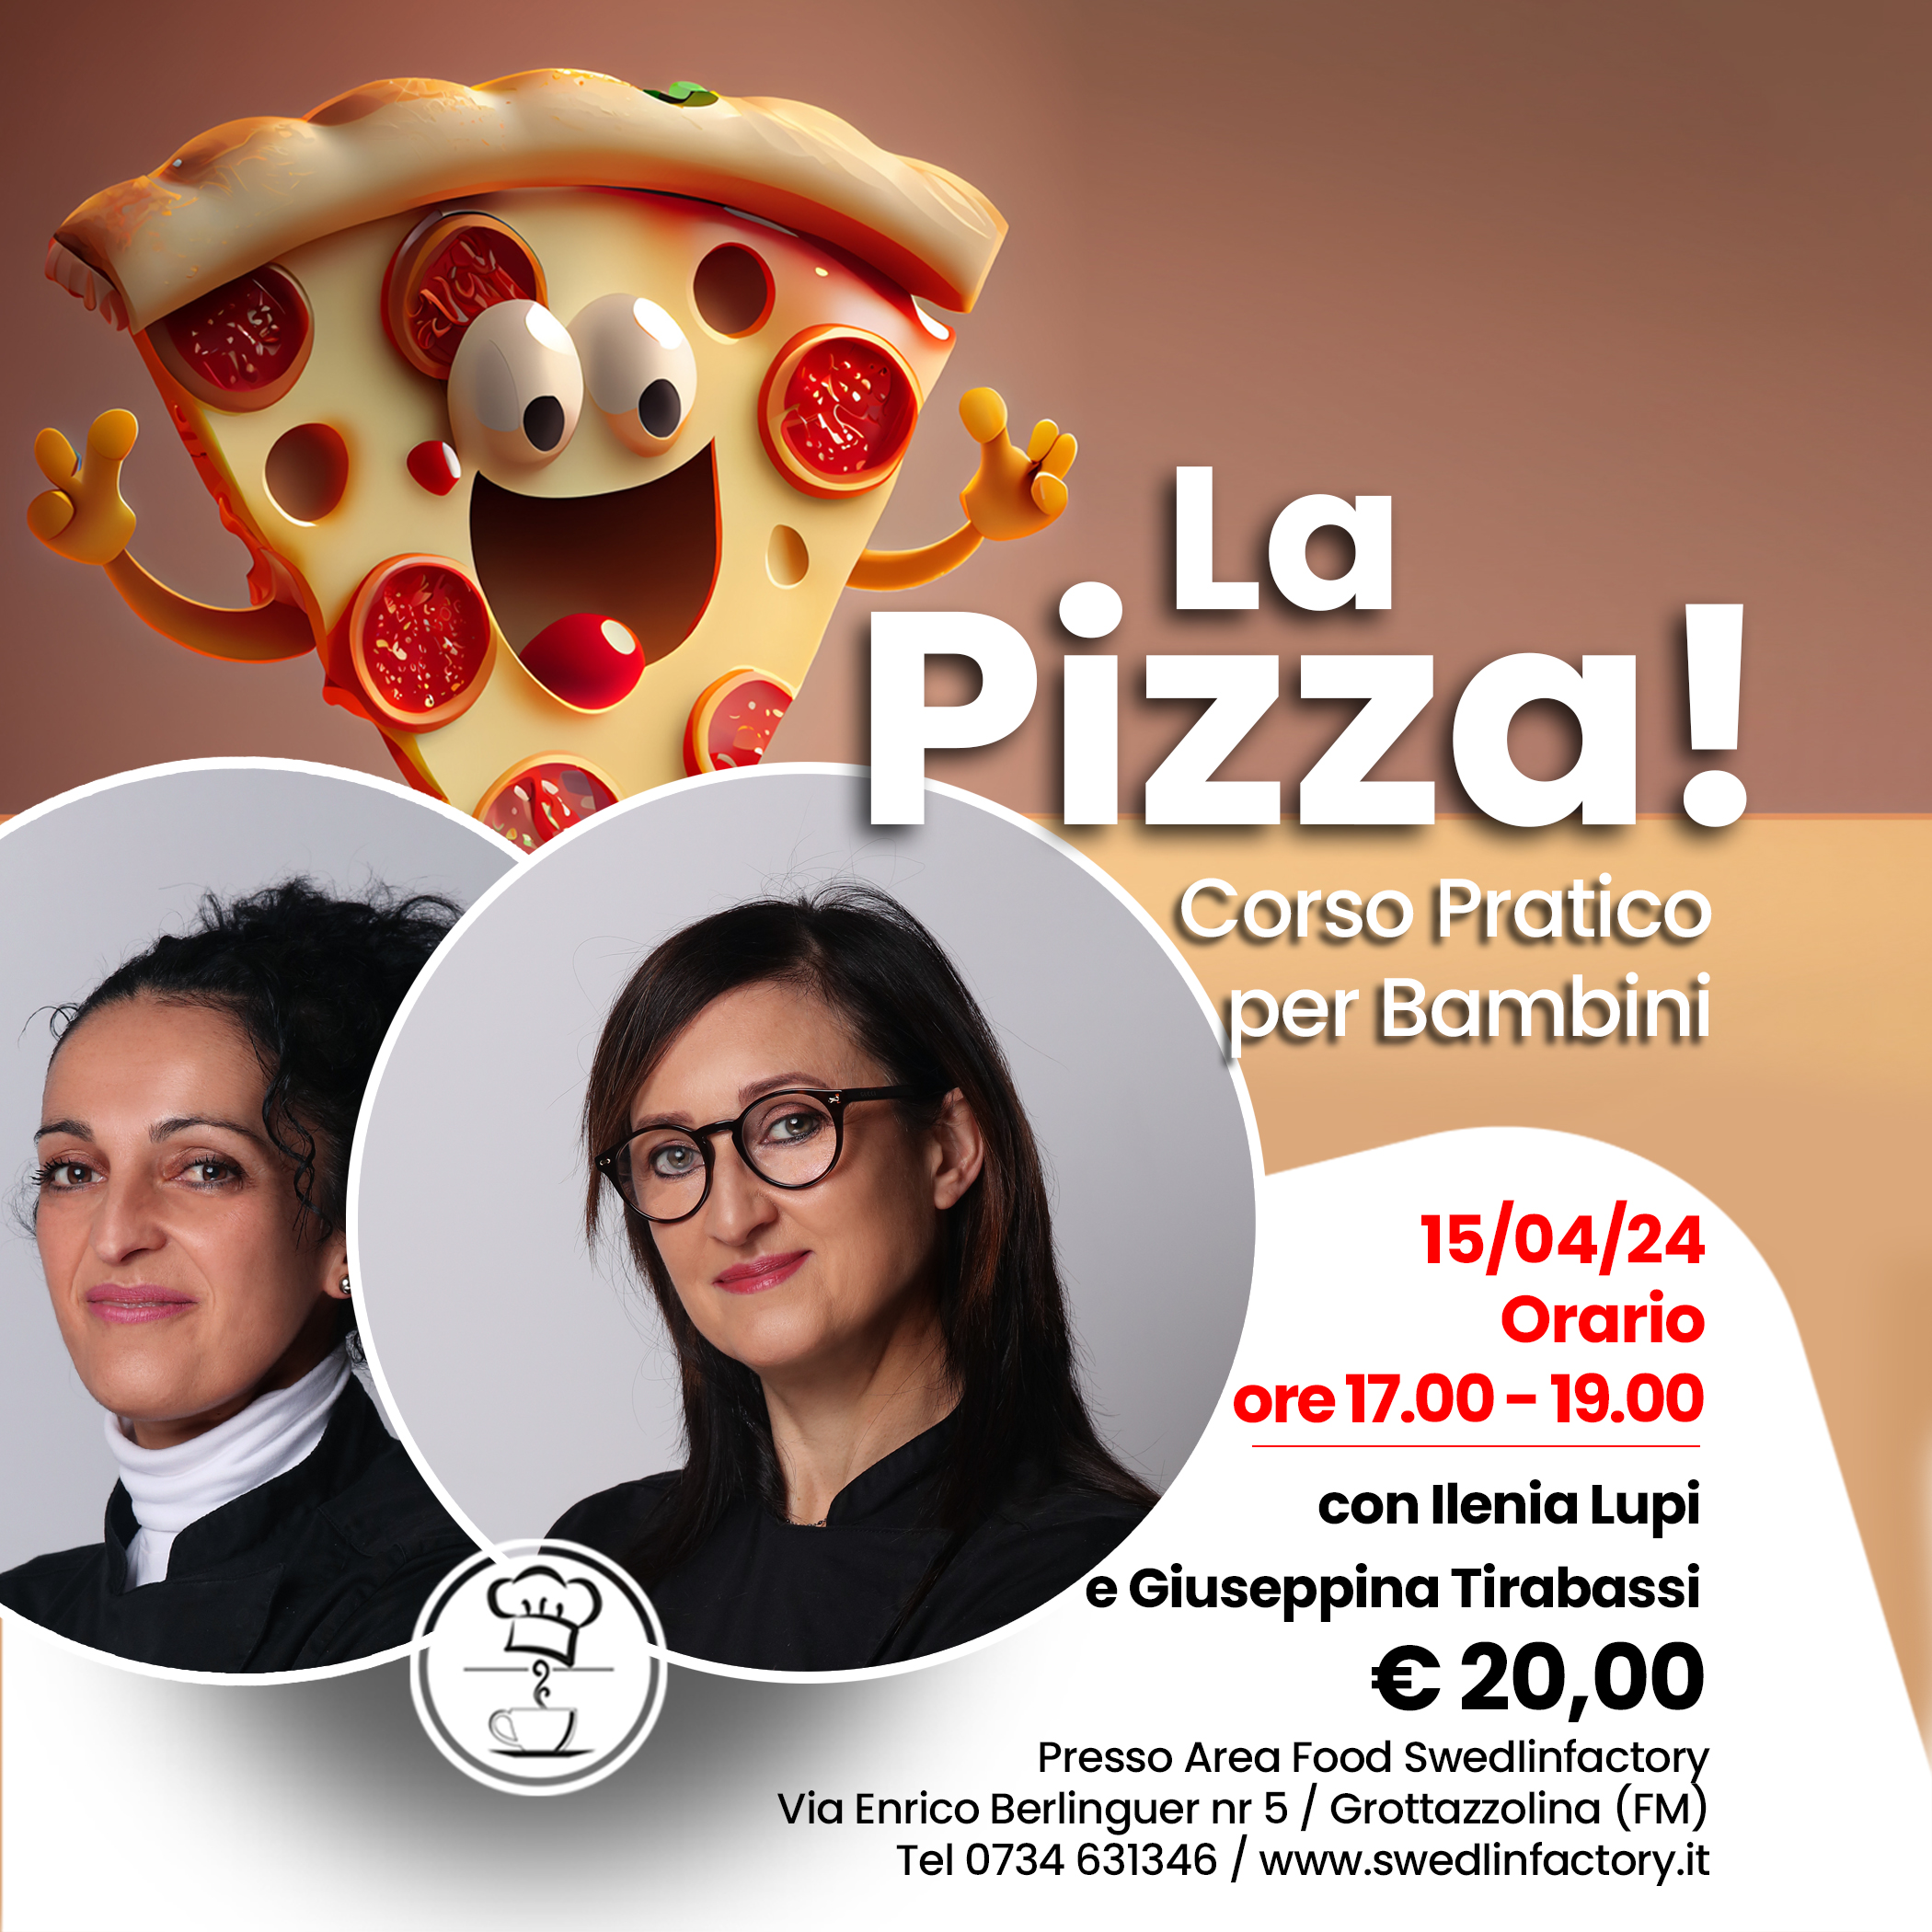 Corso di Pizza per bambini - con Lupi e Tirabassi